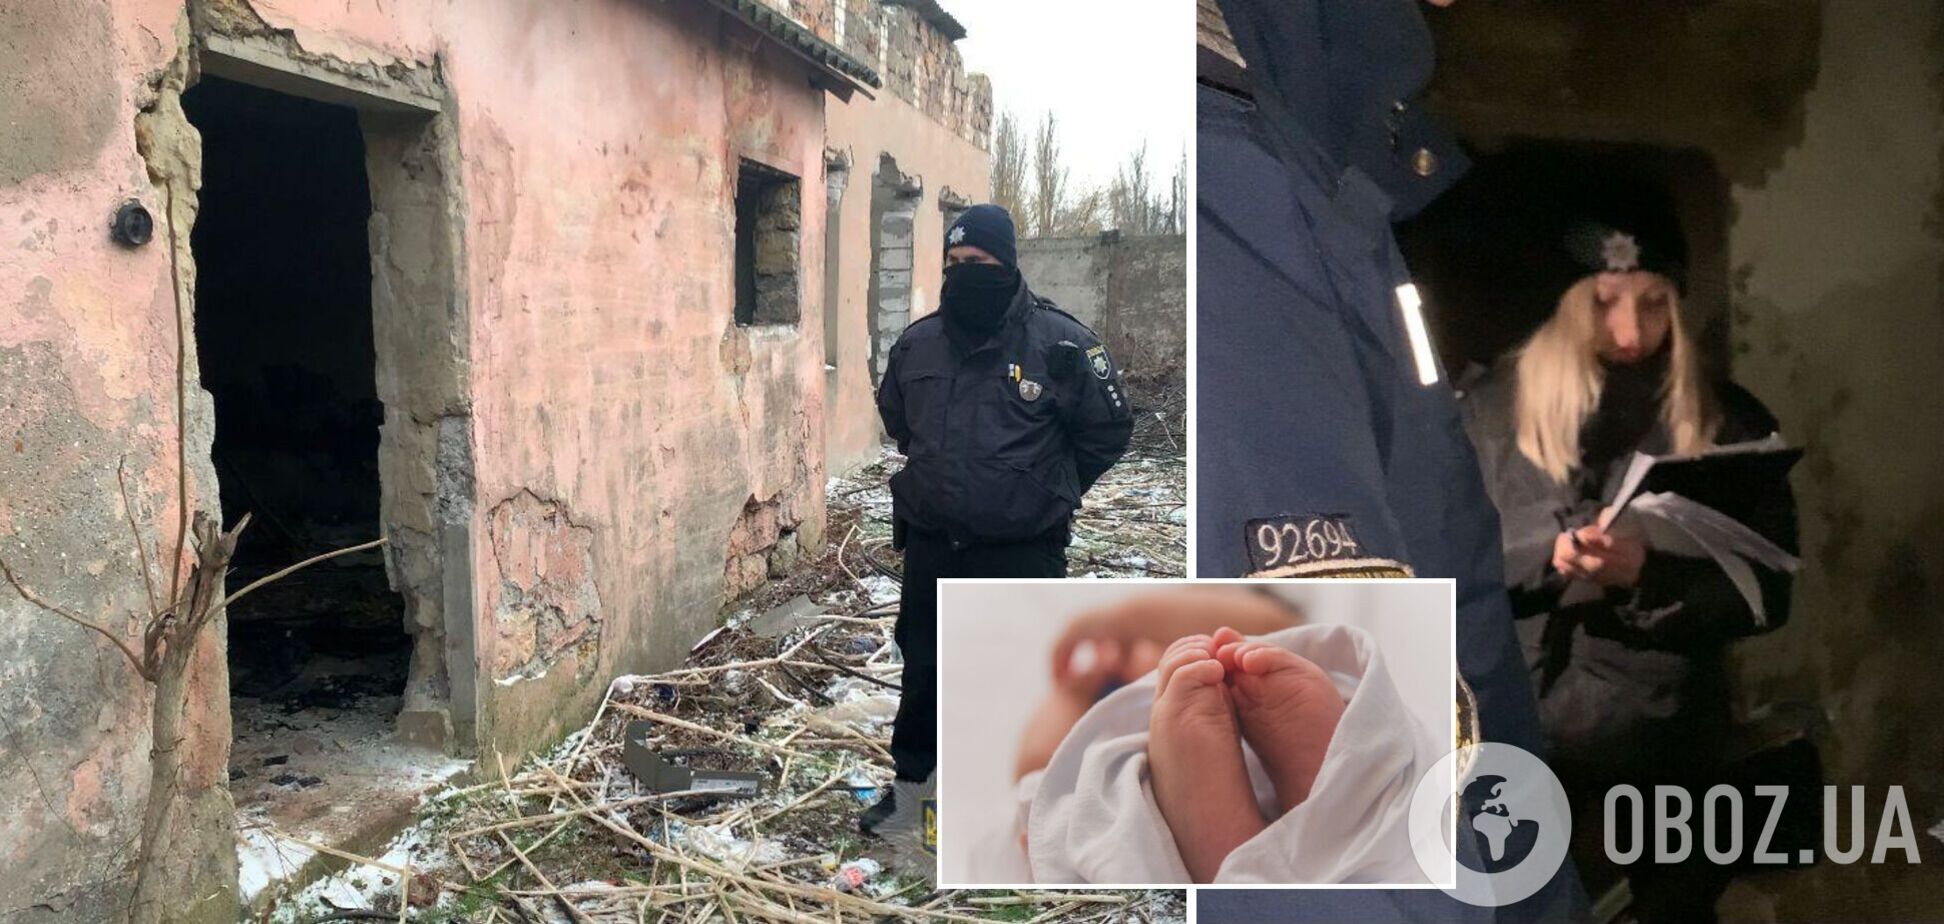 В Одессе подростки нашли тело новорожденного ребенка: лежало в пакете в заброшенном здании. Фото